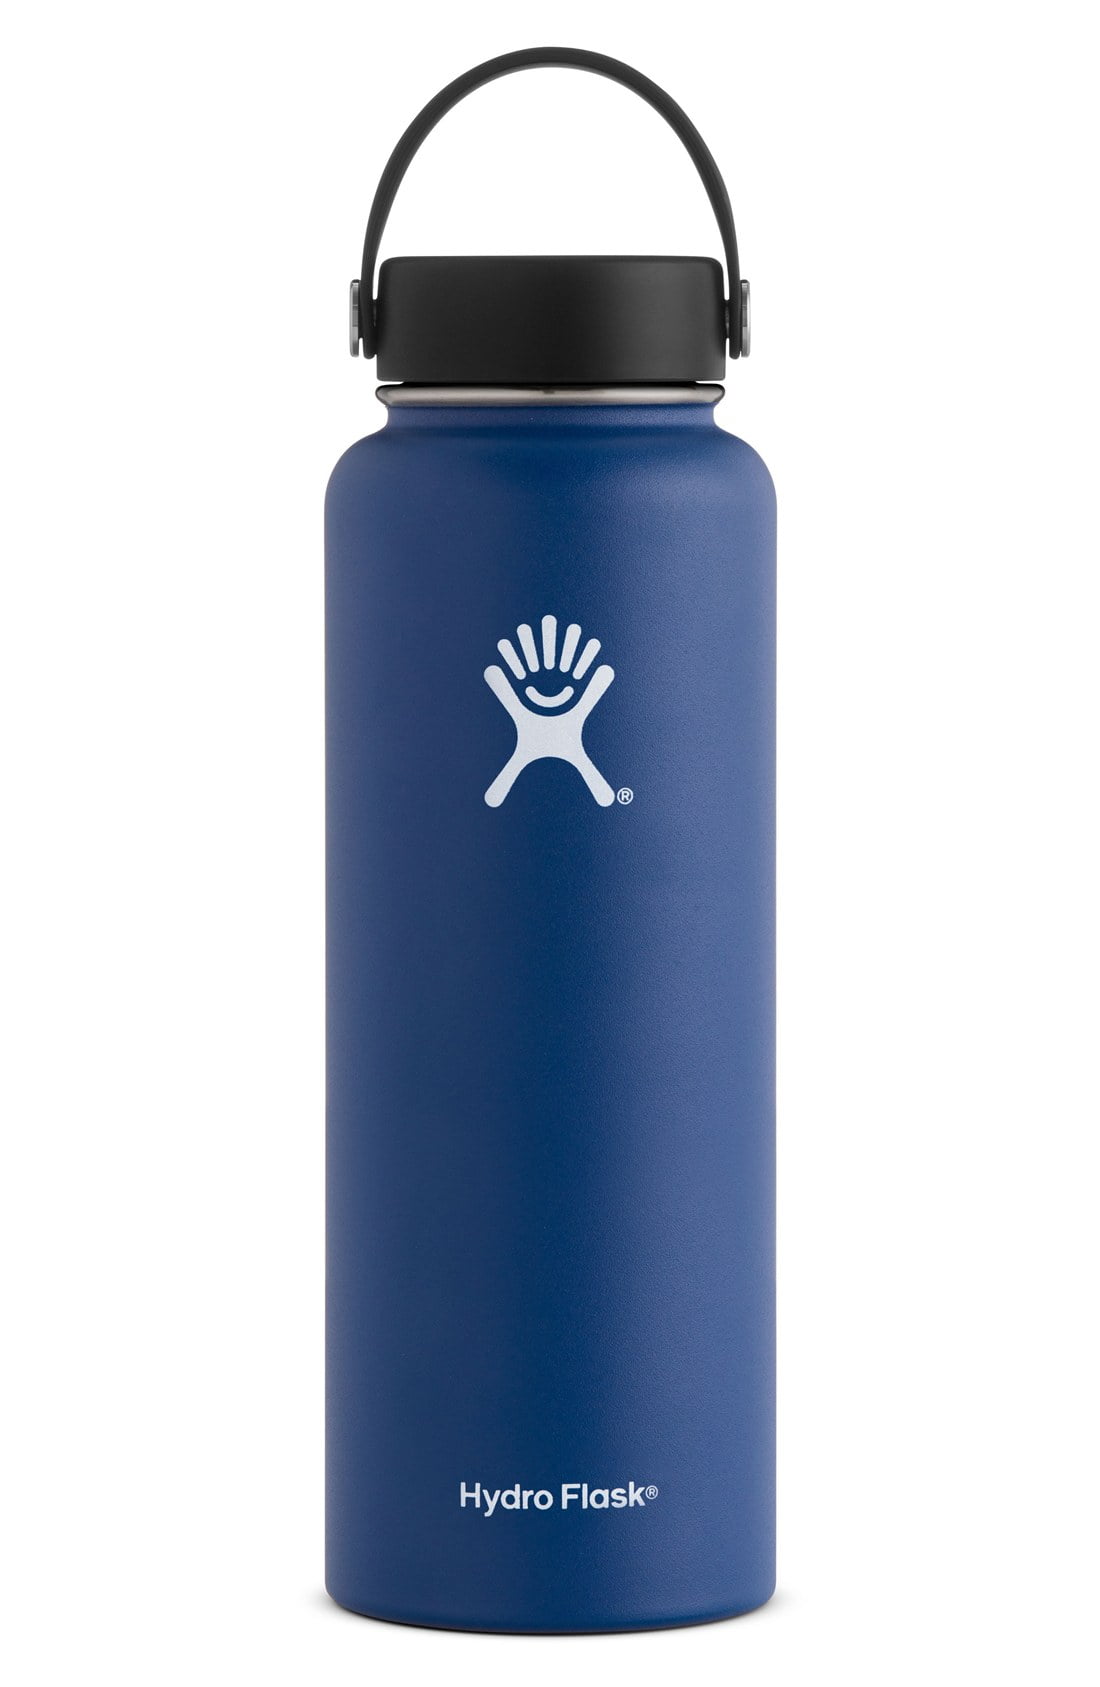 Hydro Flask 16 oz - FOG - Travel Coffee Flask / Bottle Flex Sip